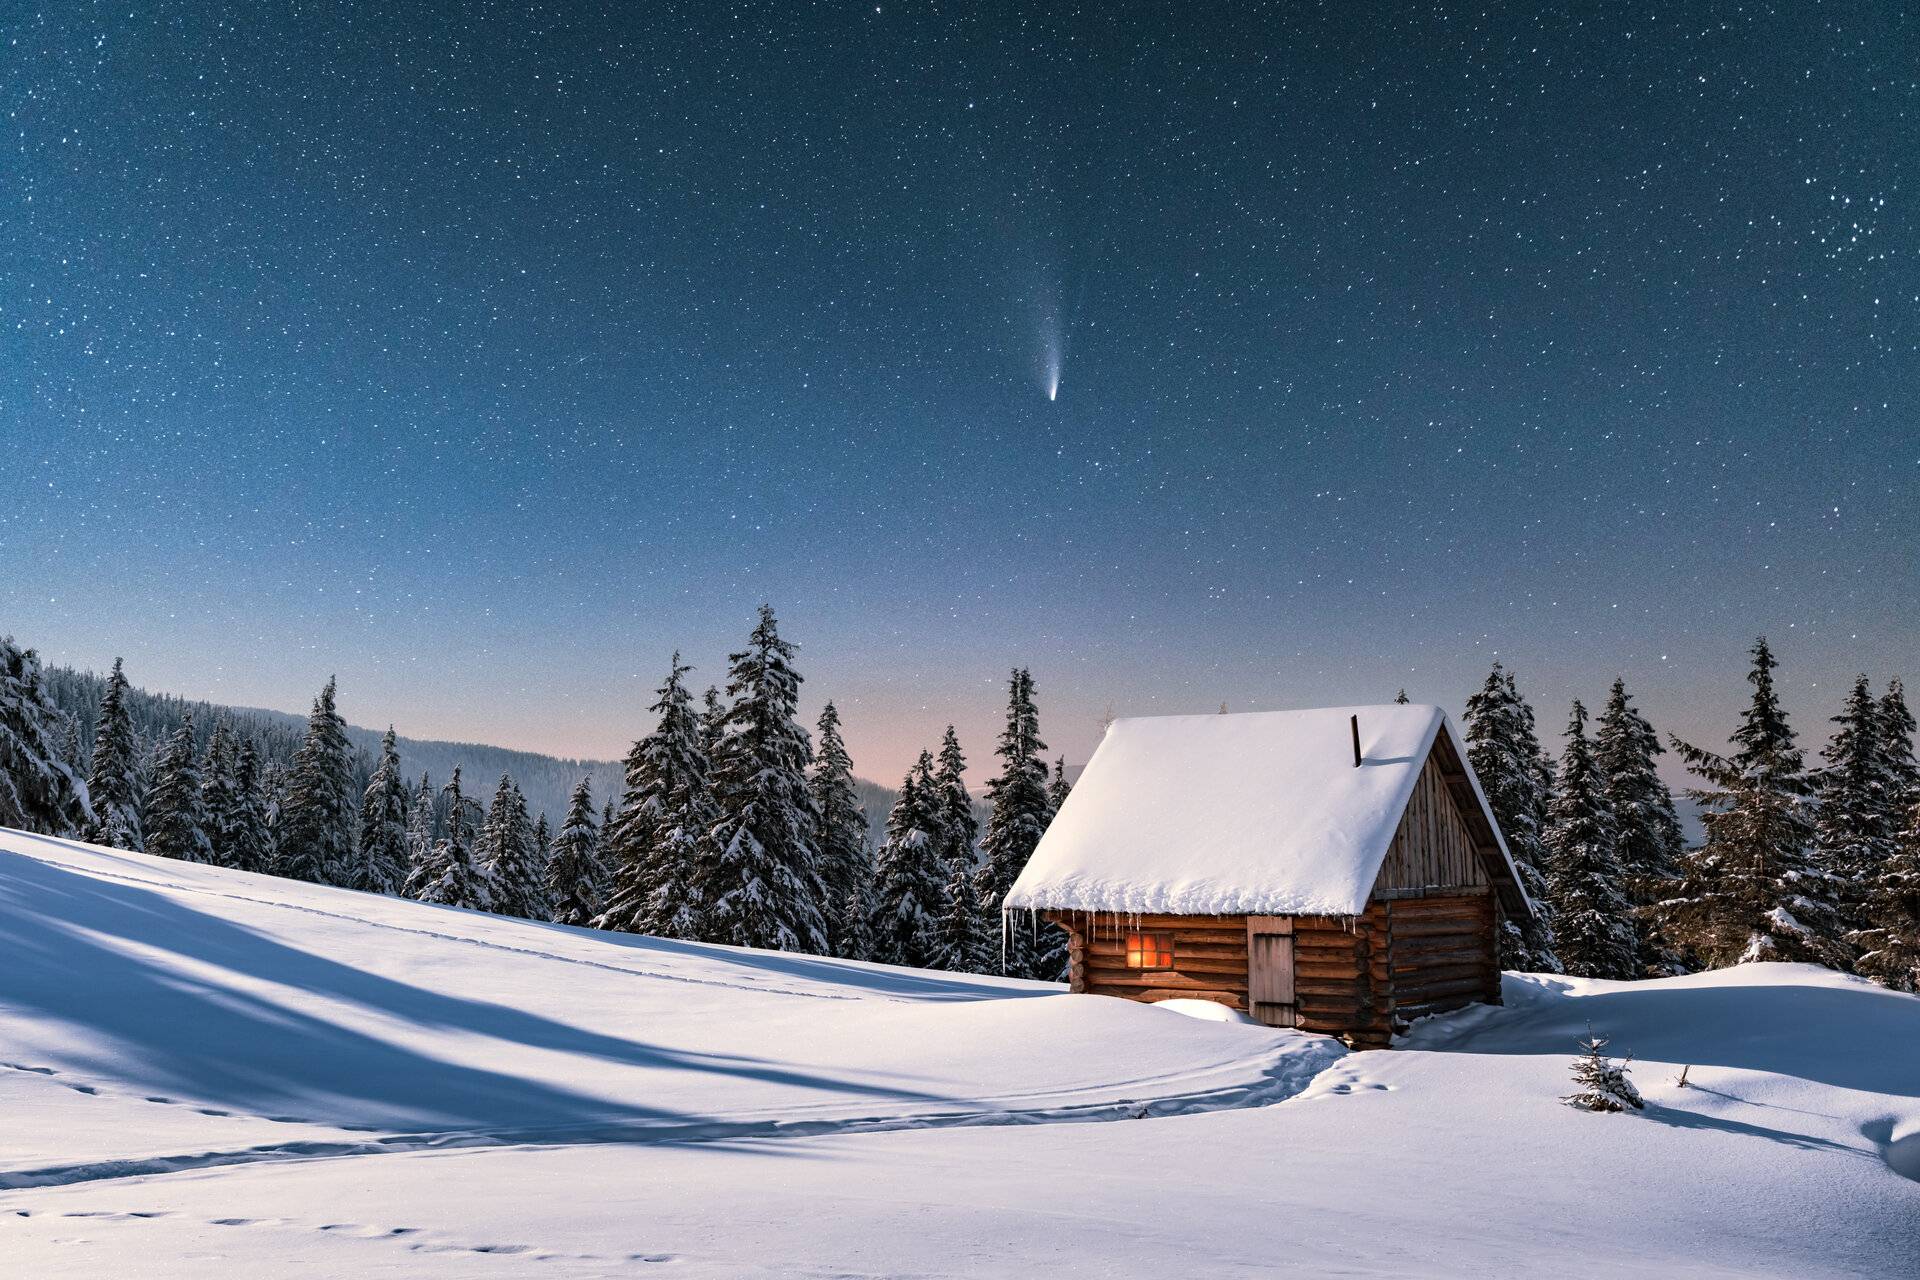 Fantastische Winterlandschaft mit Holzhaus in schneebedeckten Bergen. Sternenhimmel mit Komet und schneebedeckter Hütte. 